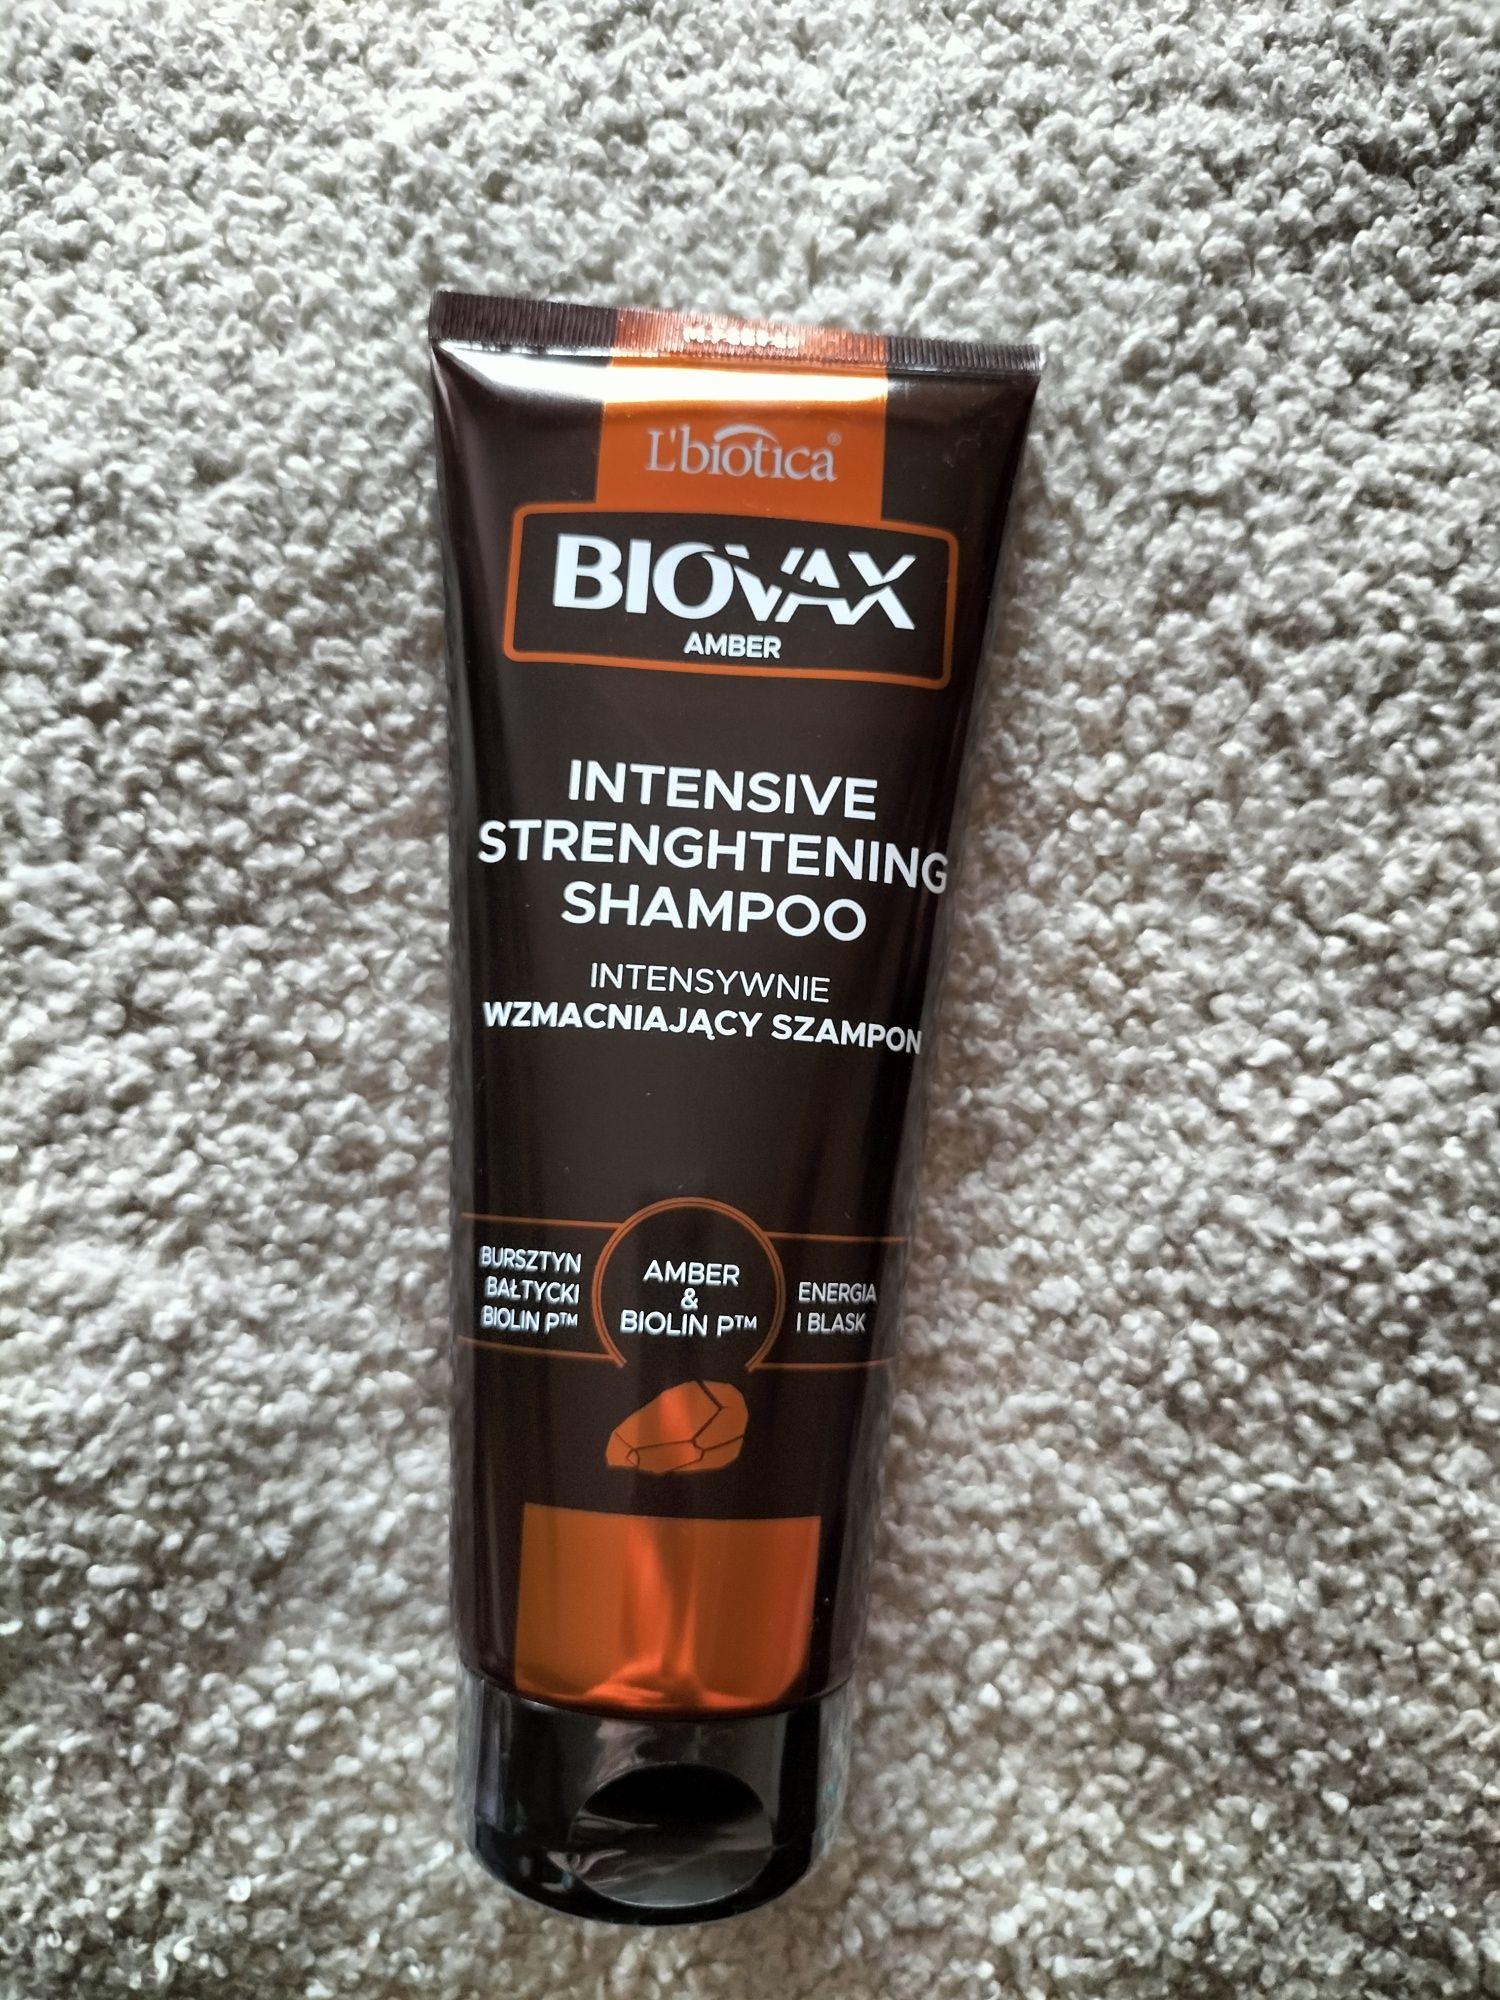 L'biotica Biovax Amber intensywnie wzmacniający szampon